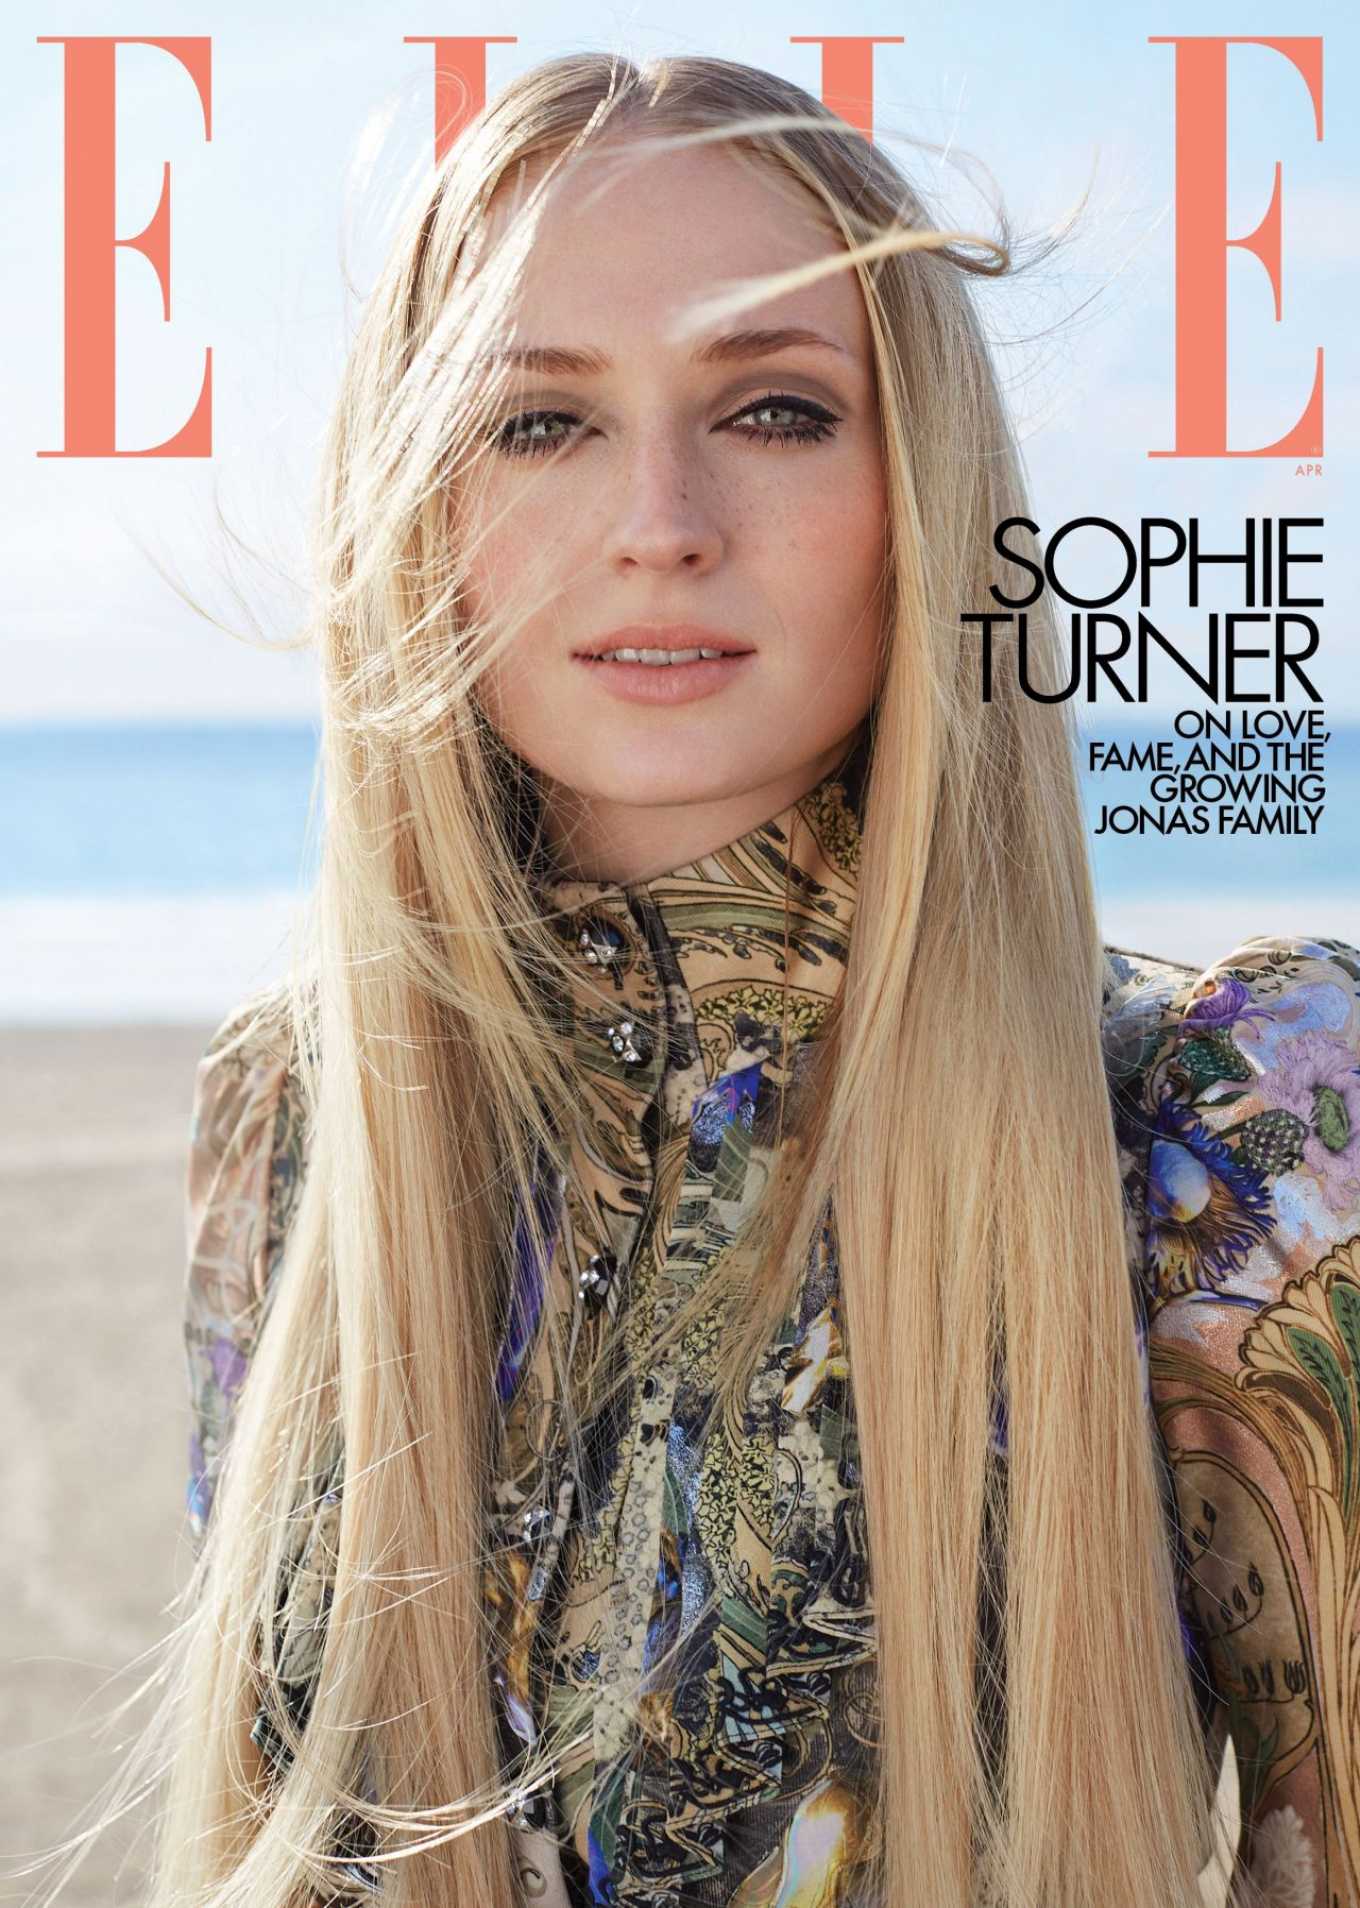 Sophie Turner â€“ ELLE Magazine (April 2020)